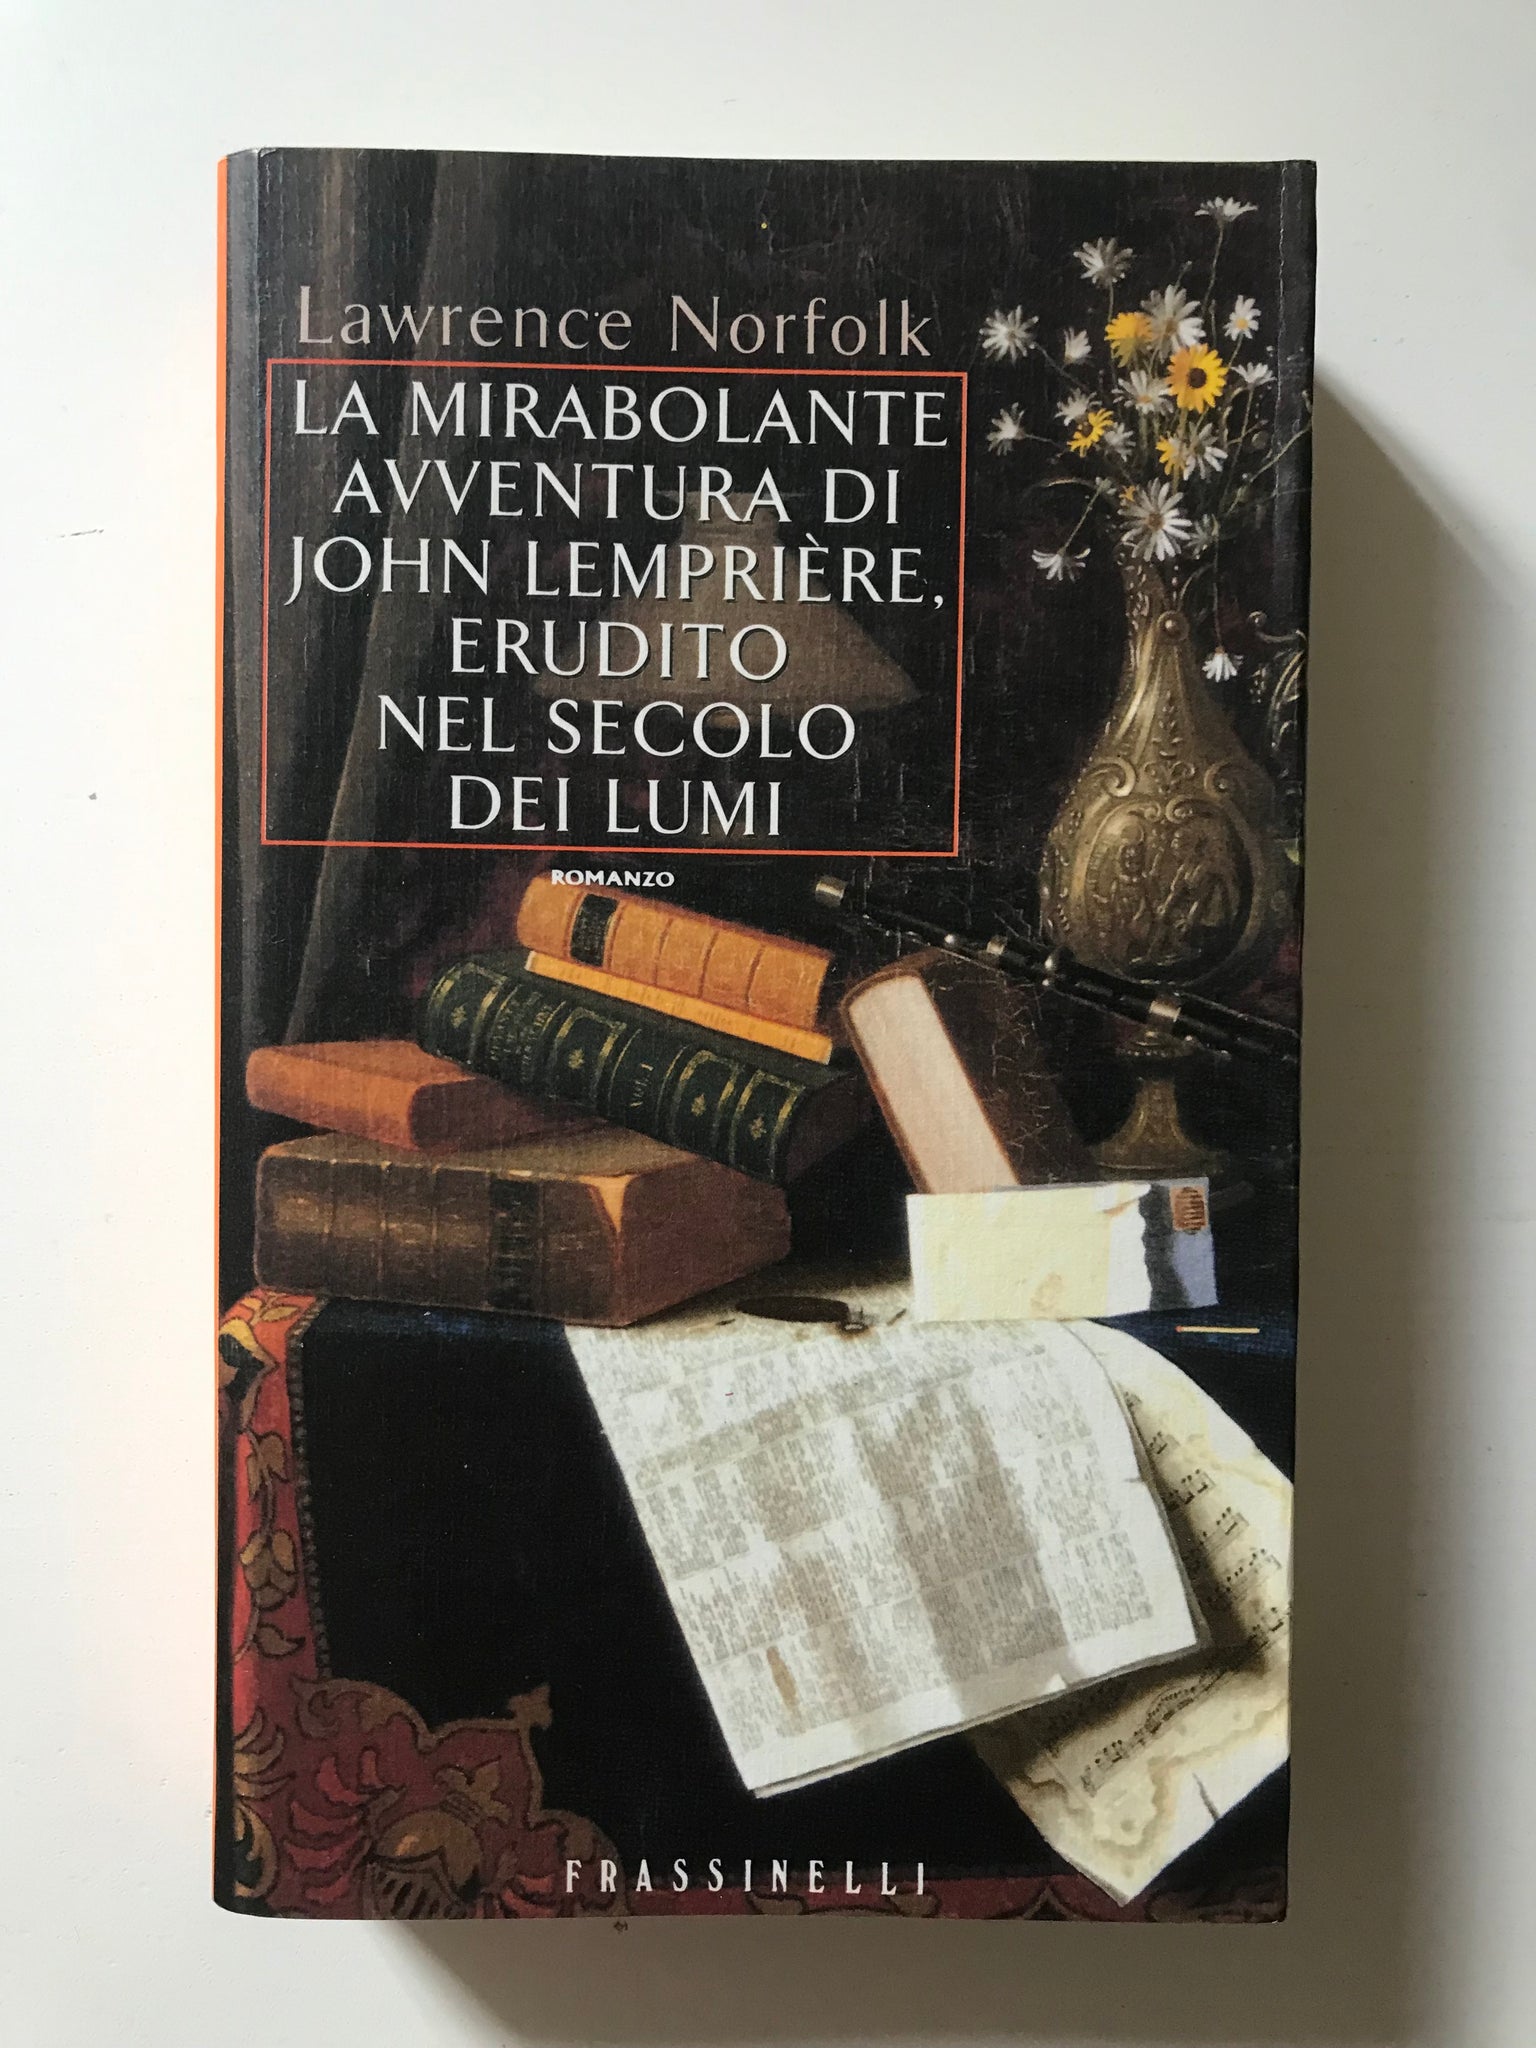 Lawrence Norfolk - La mirabolante avventura di John Lempriere, erudito nel secolo dei lumi